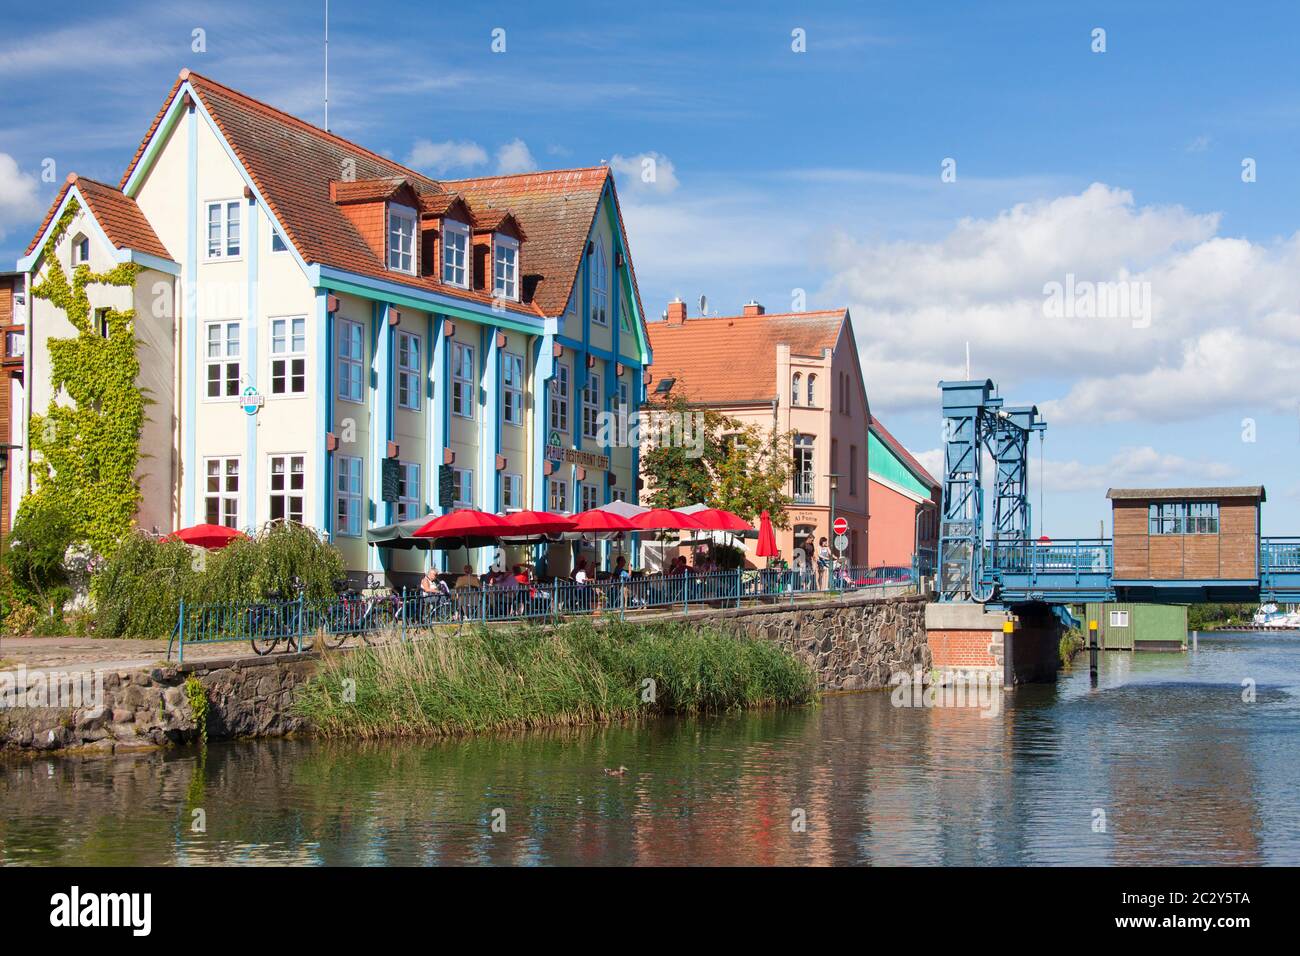 Pont élévateur traditionnel sur l'Elde à Plau am See, ville dans le quartier de Ludwigslust-Parchim, Mecklembourg-Poméranie occidentale, Allemagne Banque D'Images